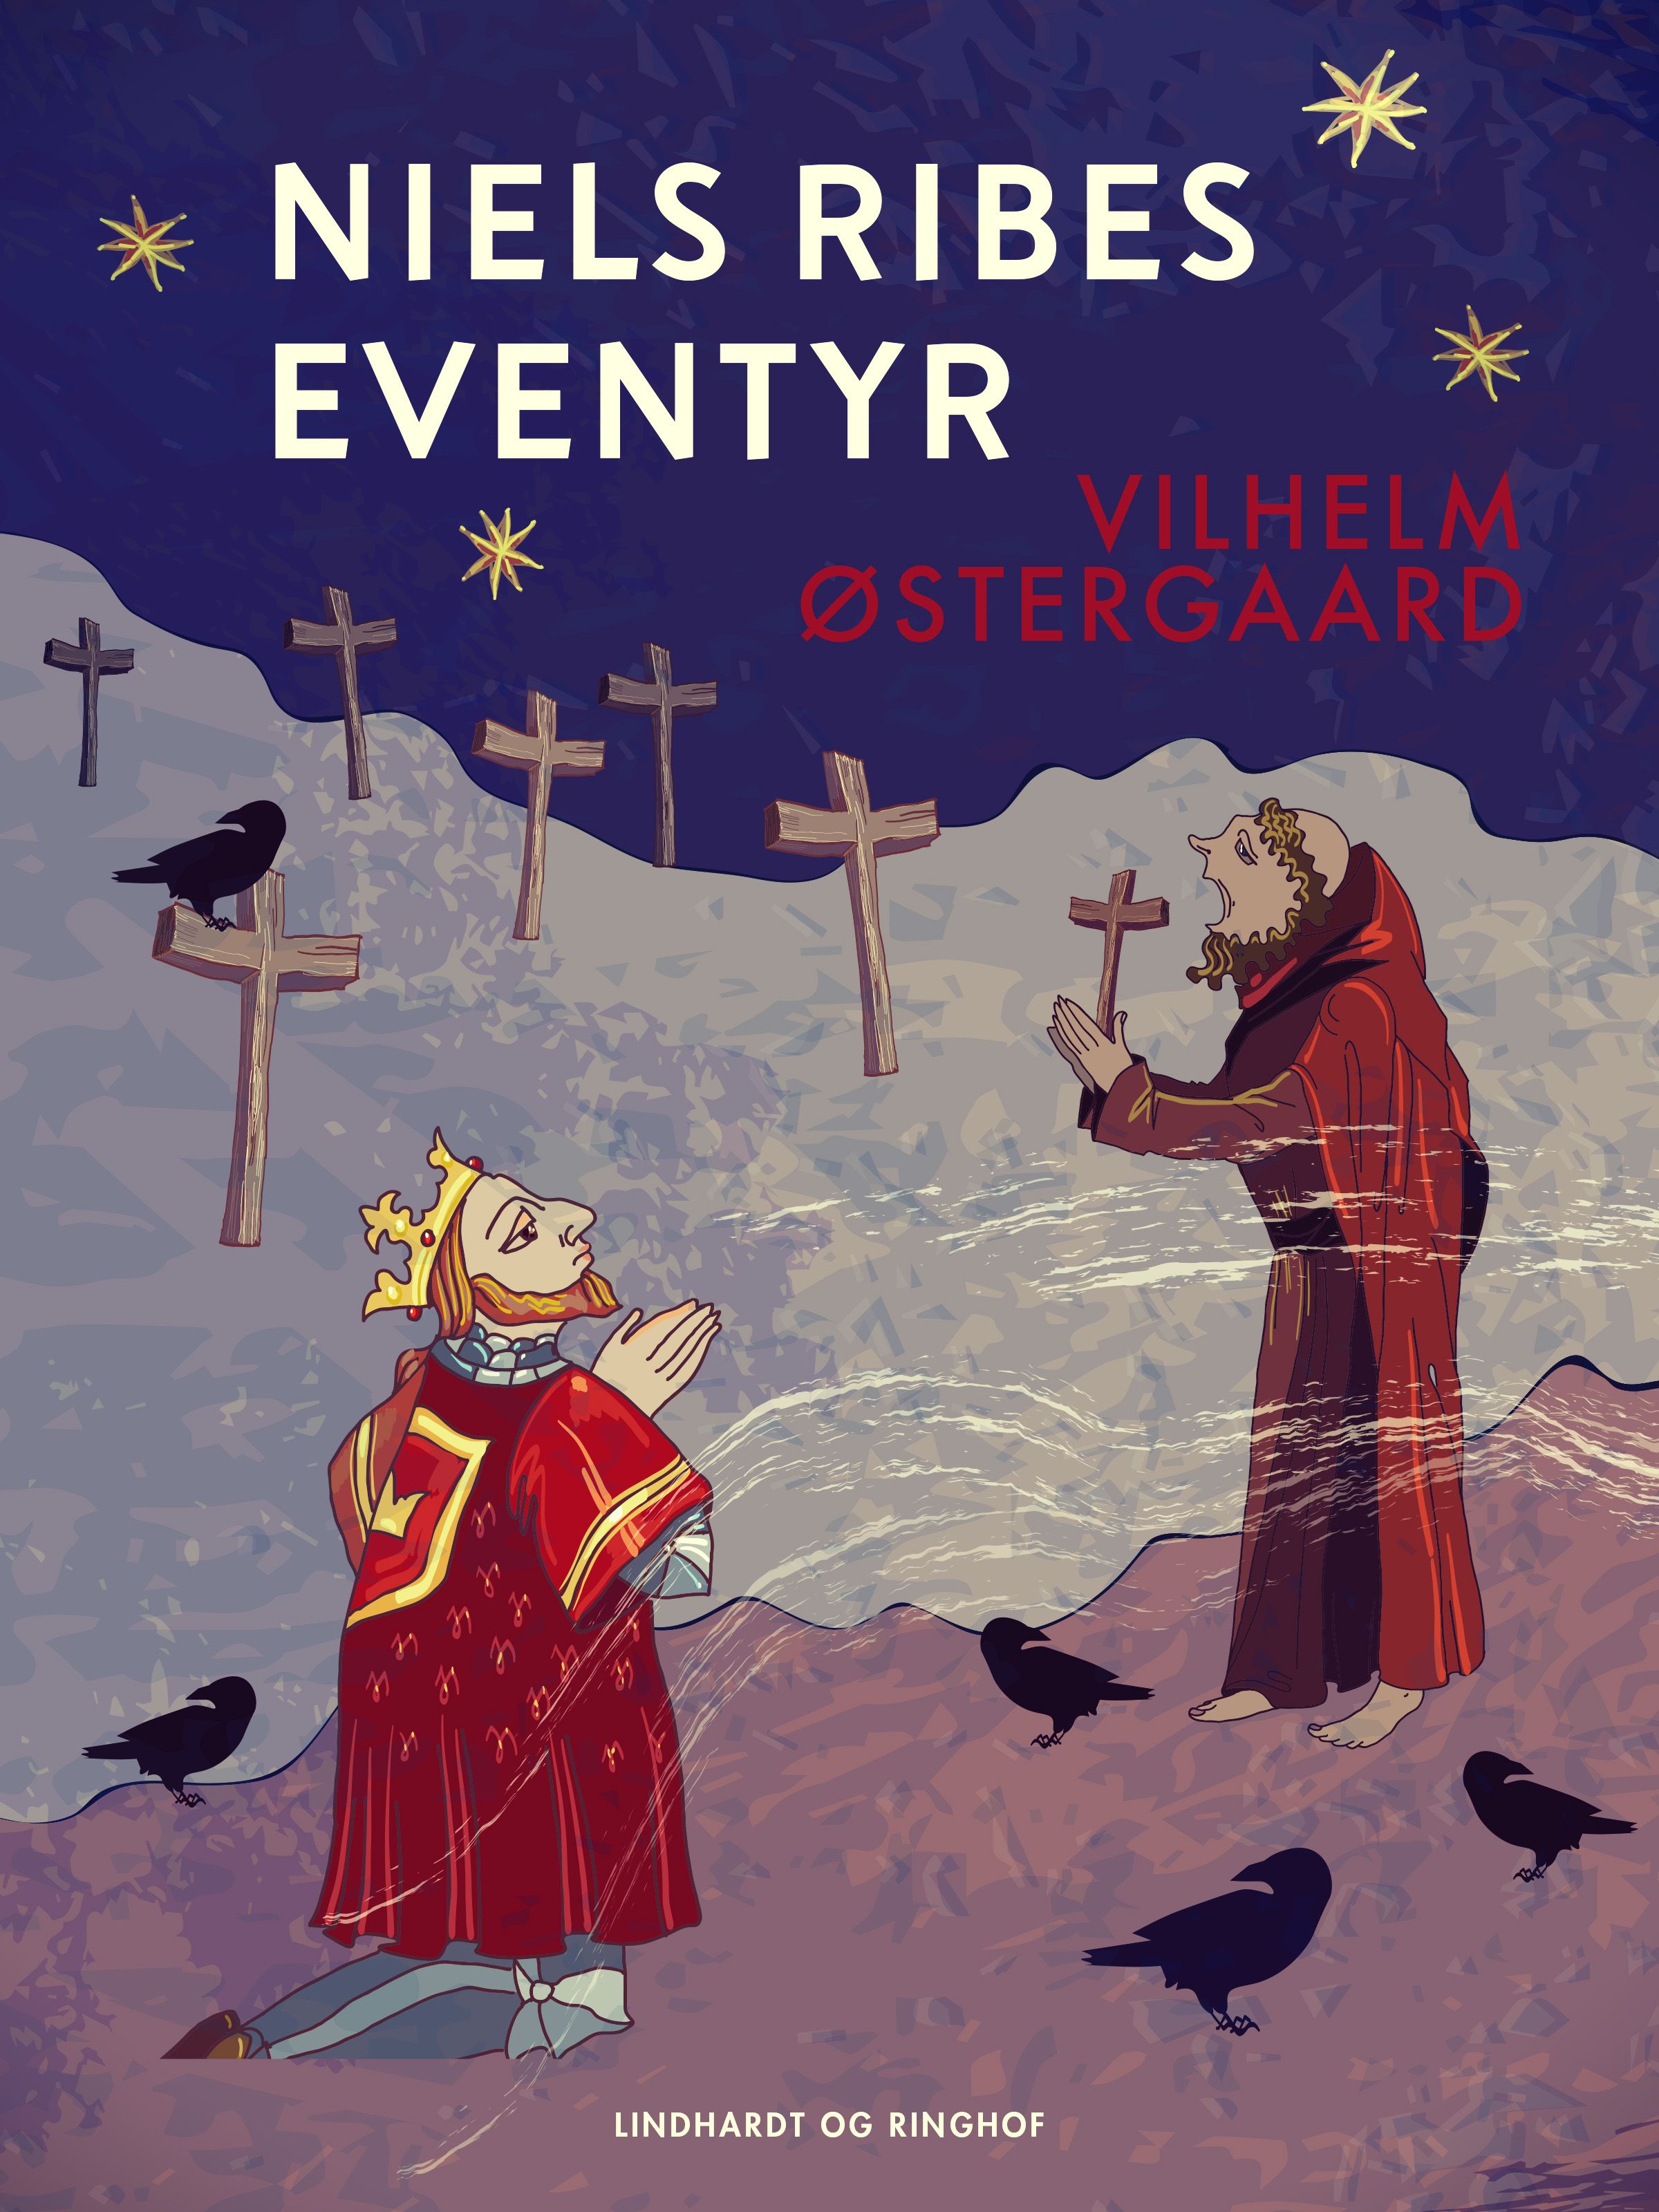 Niels Ribes eventyr, e-bog af Vilhelm Østergaard